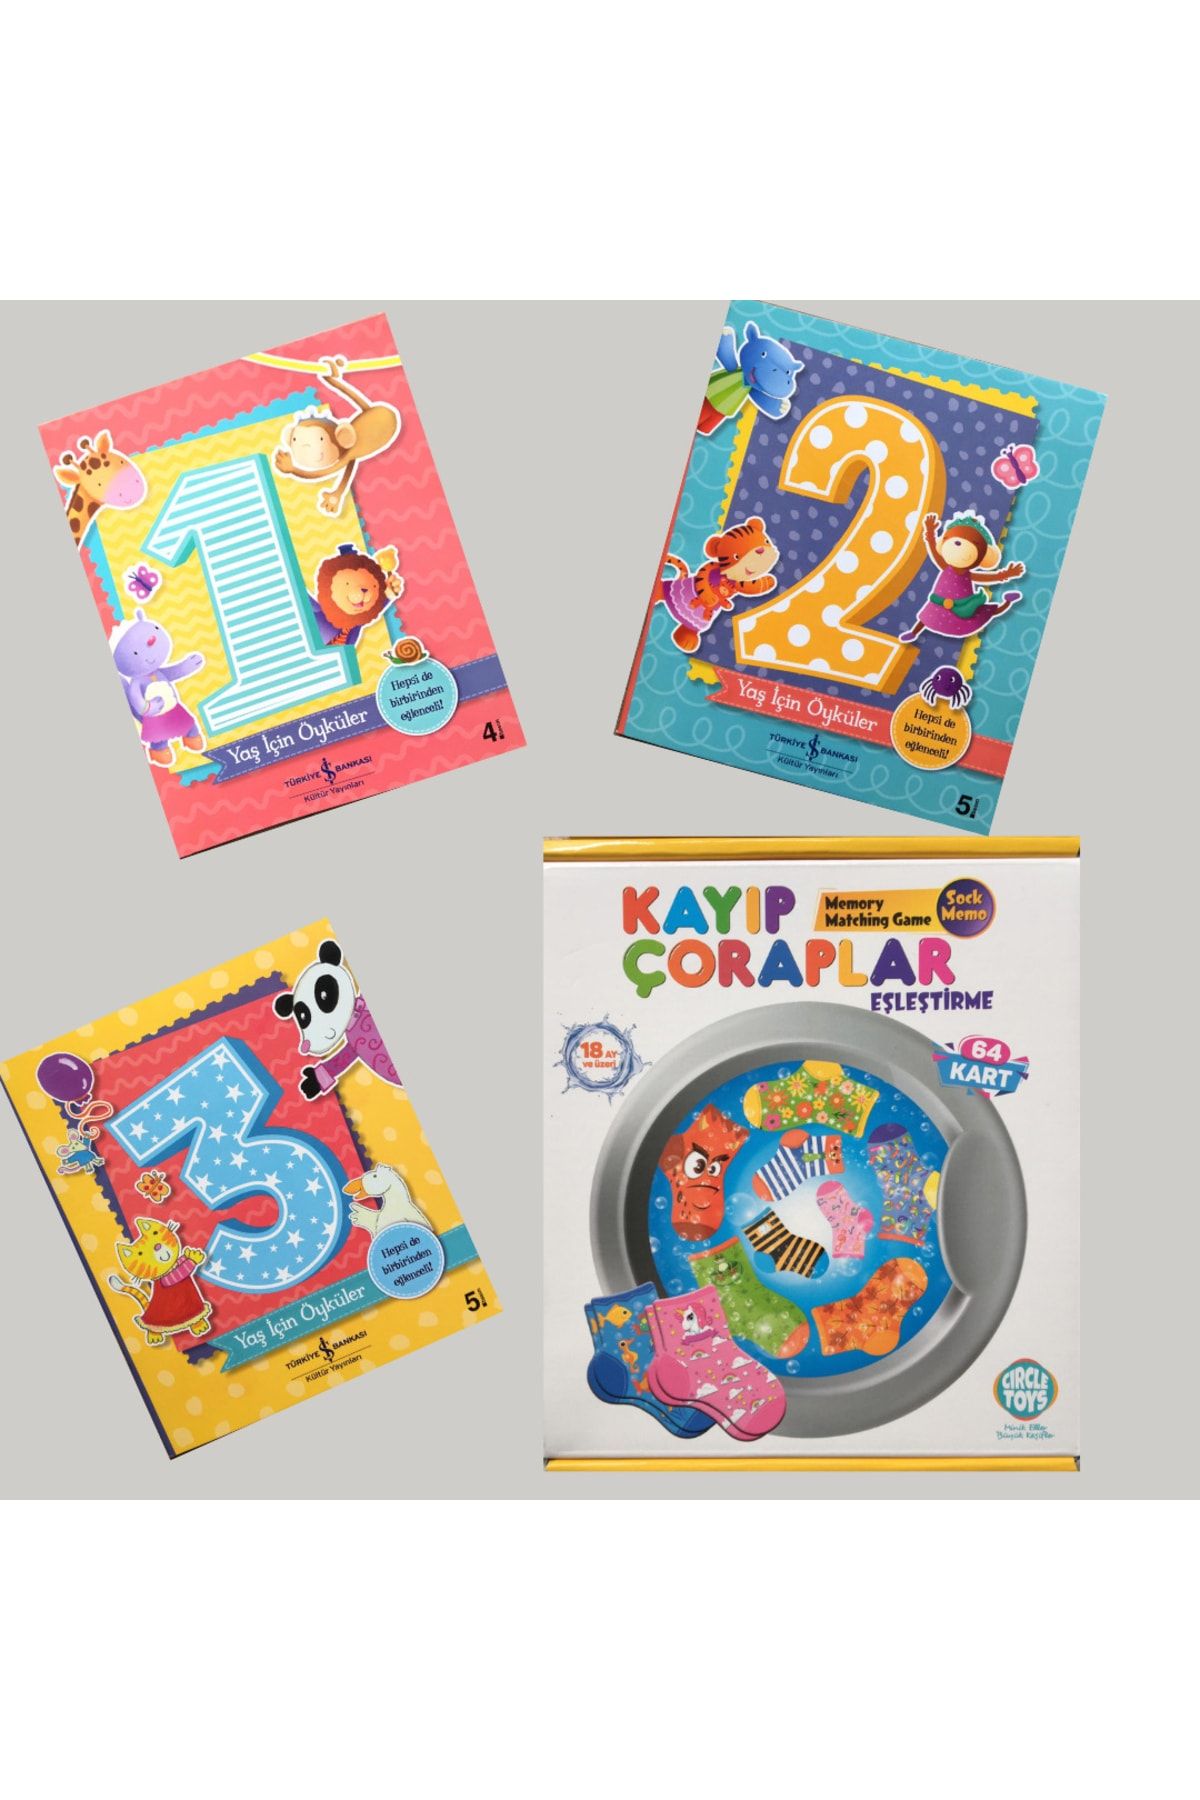 Circle Toys 0-3 Yaş Kayıp Çoraplar Eşleştirme Görsel Zeka Dikkat Ve Algı Oyunu & 1-3 Yaş Için Öyküler Seti